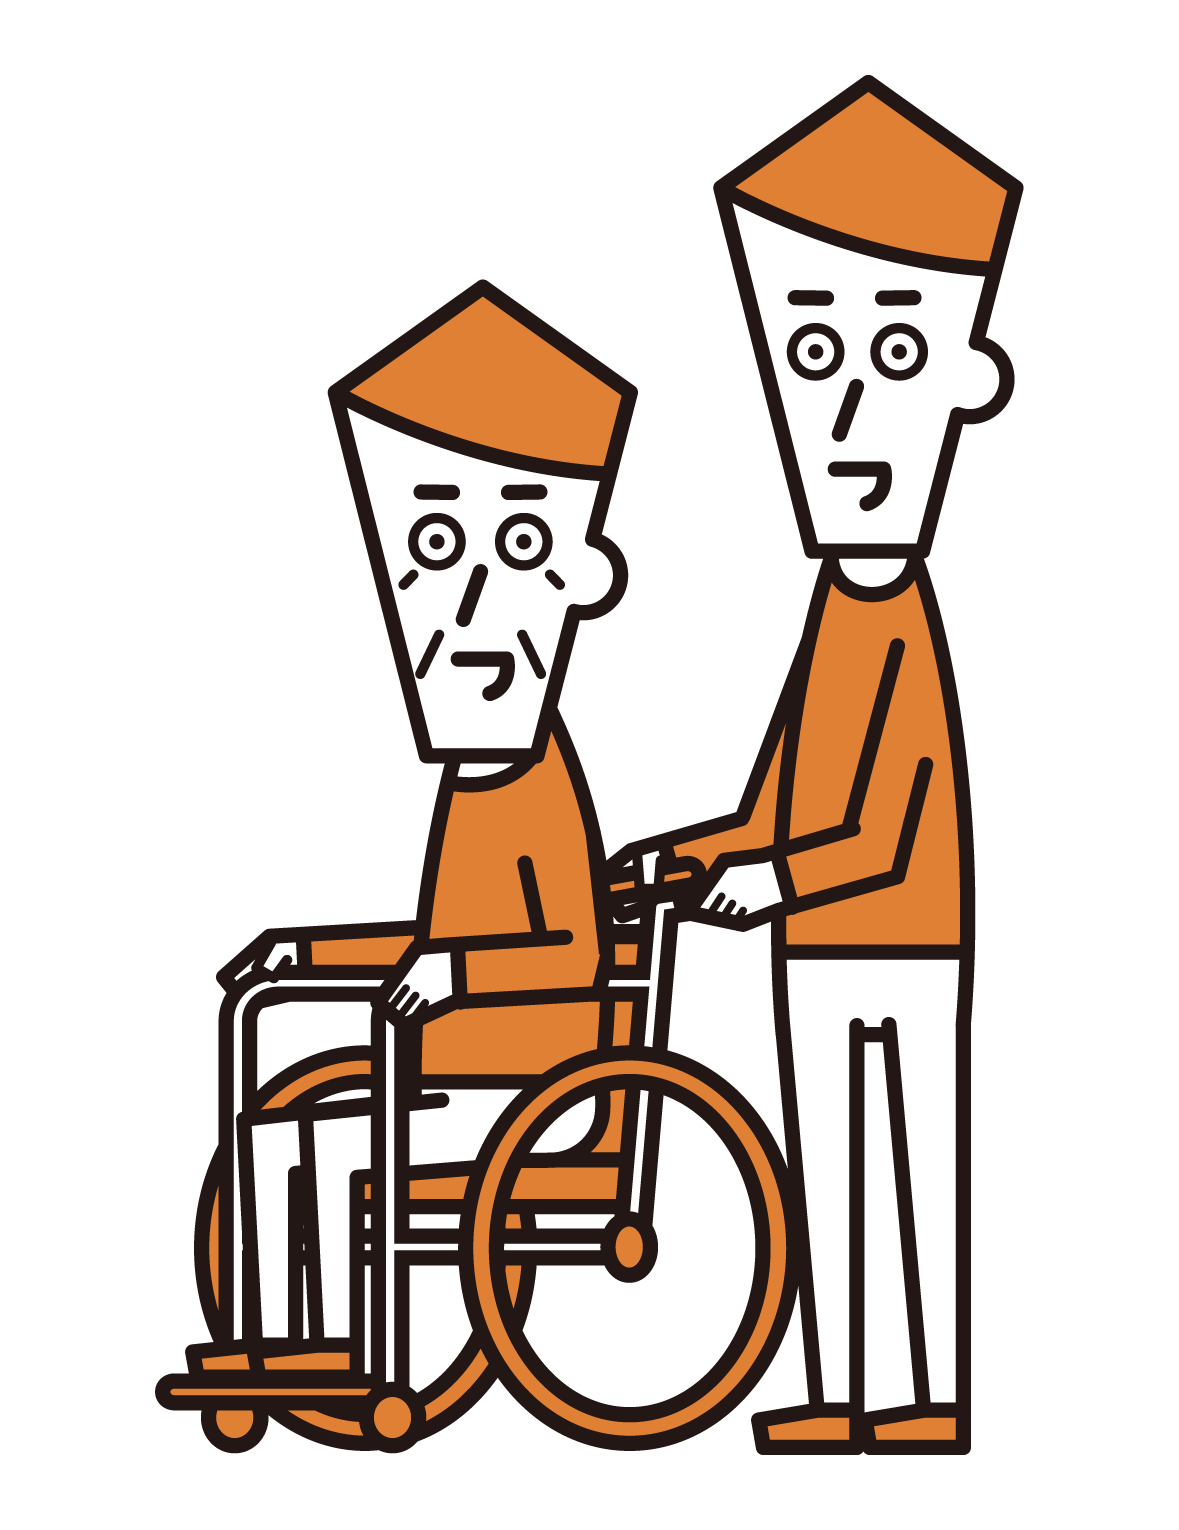 車椅子に乗っている人（おじいさん）と押す人（男性）のイラスト